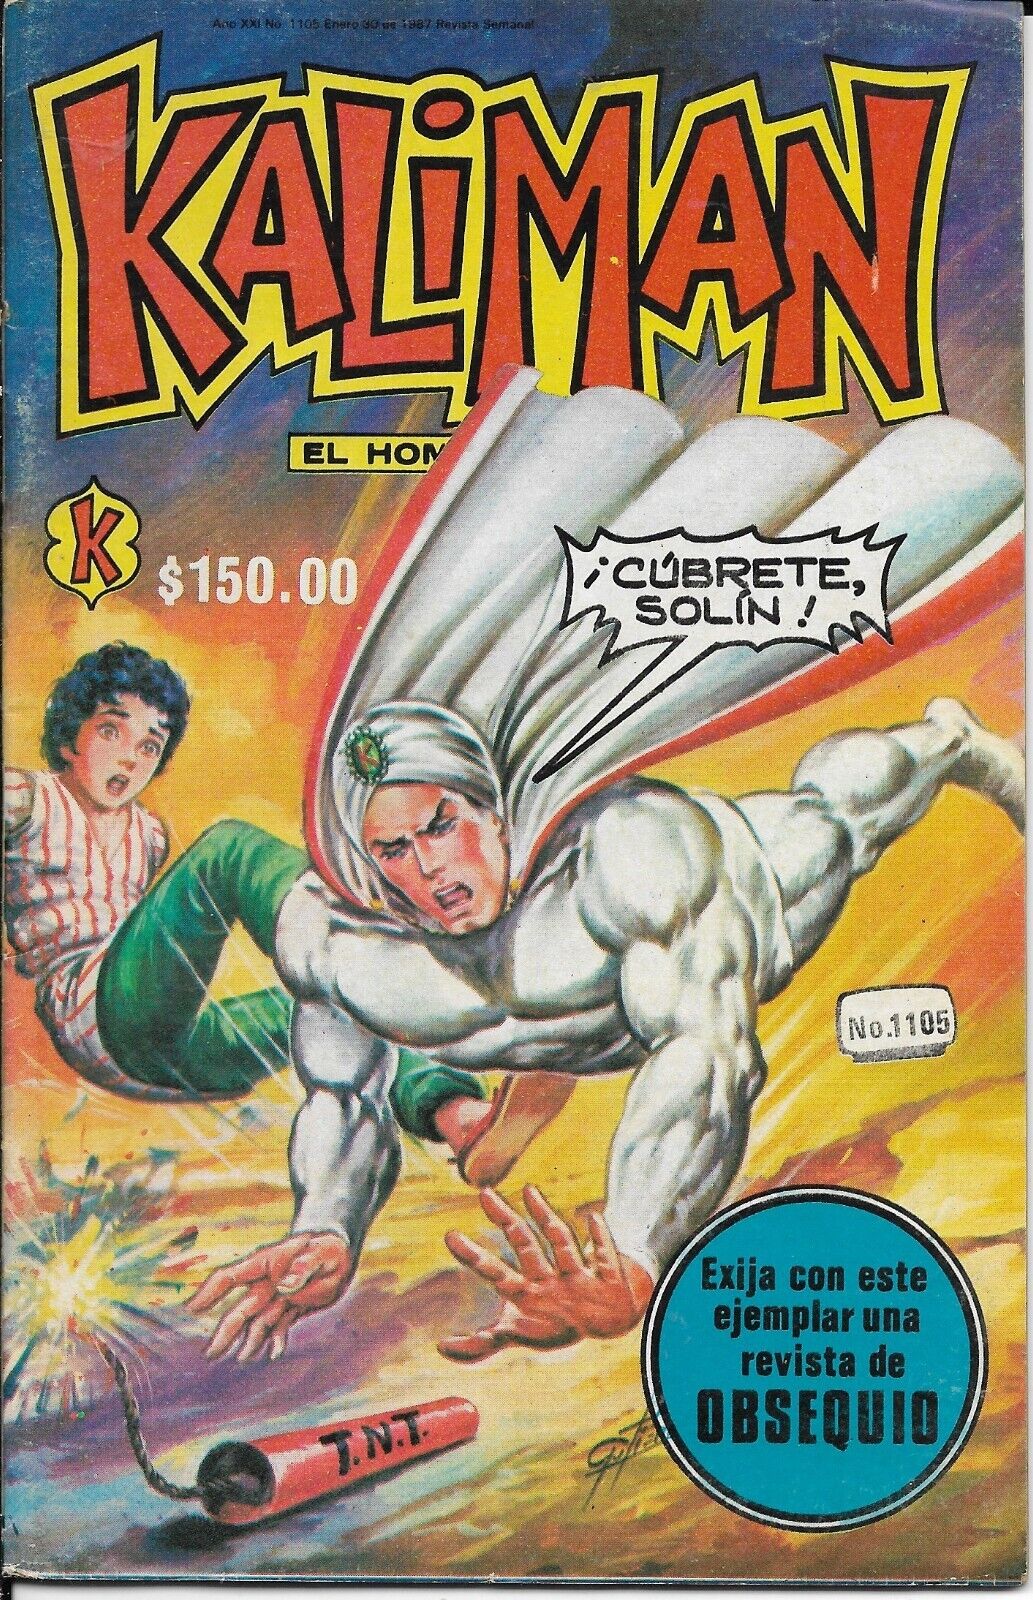 Kaliman El Hombre Increible #1105 - Enero 30, 1987